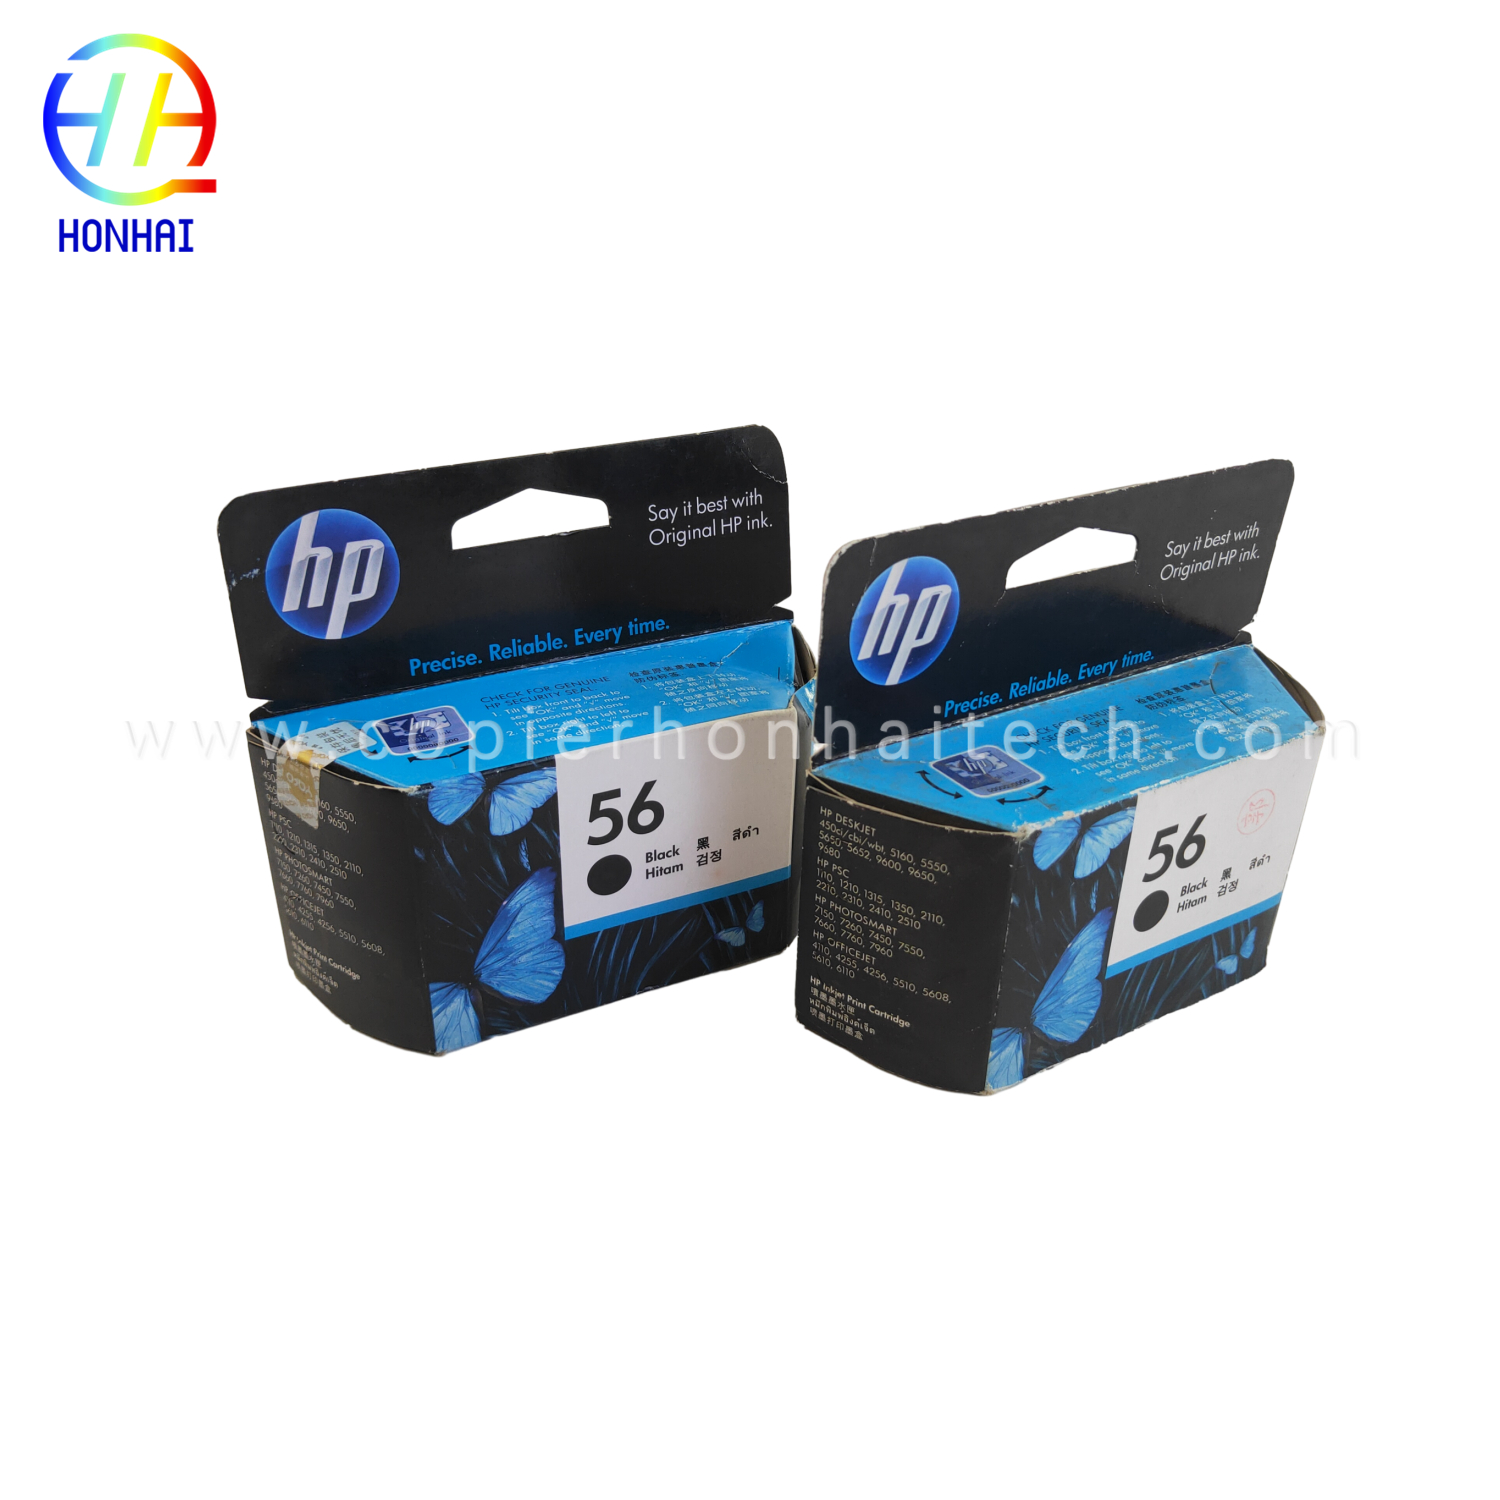 https://www.copierhonhaitech.com/originele-zwarte-printer-inktcartridge-56-voor-hp-deskjet-5550-5551-5552-product/